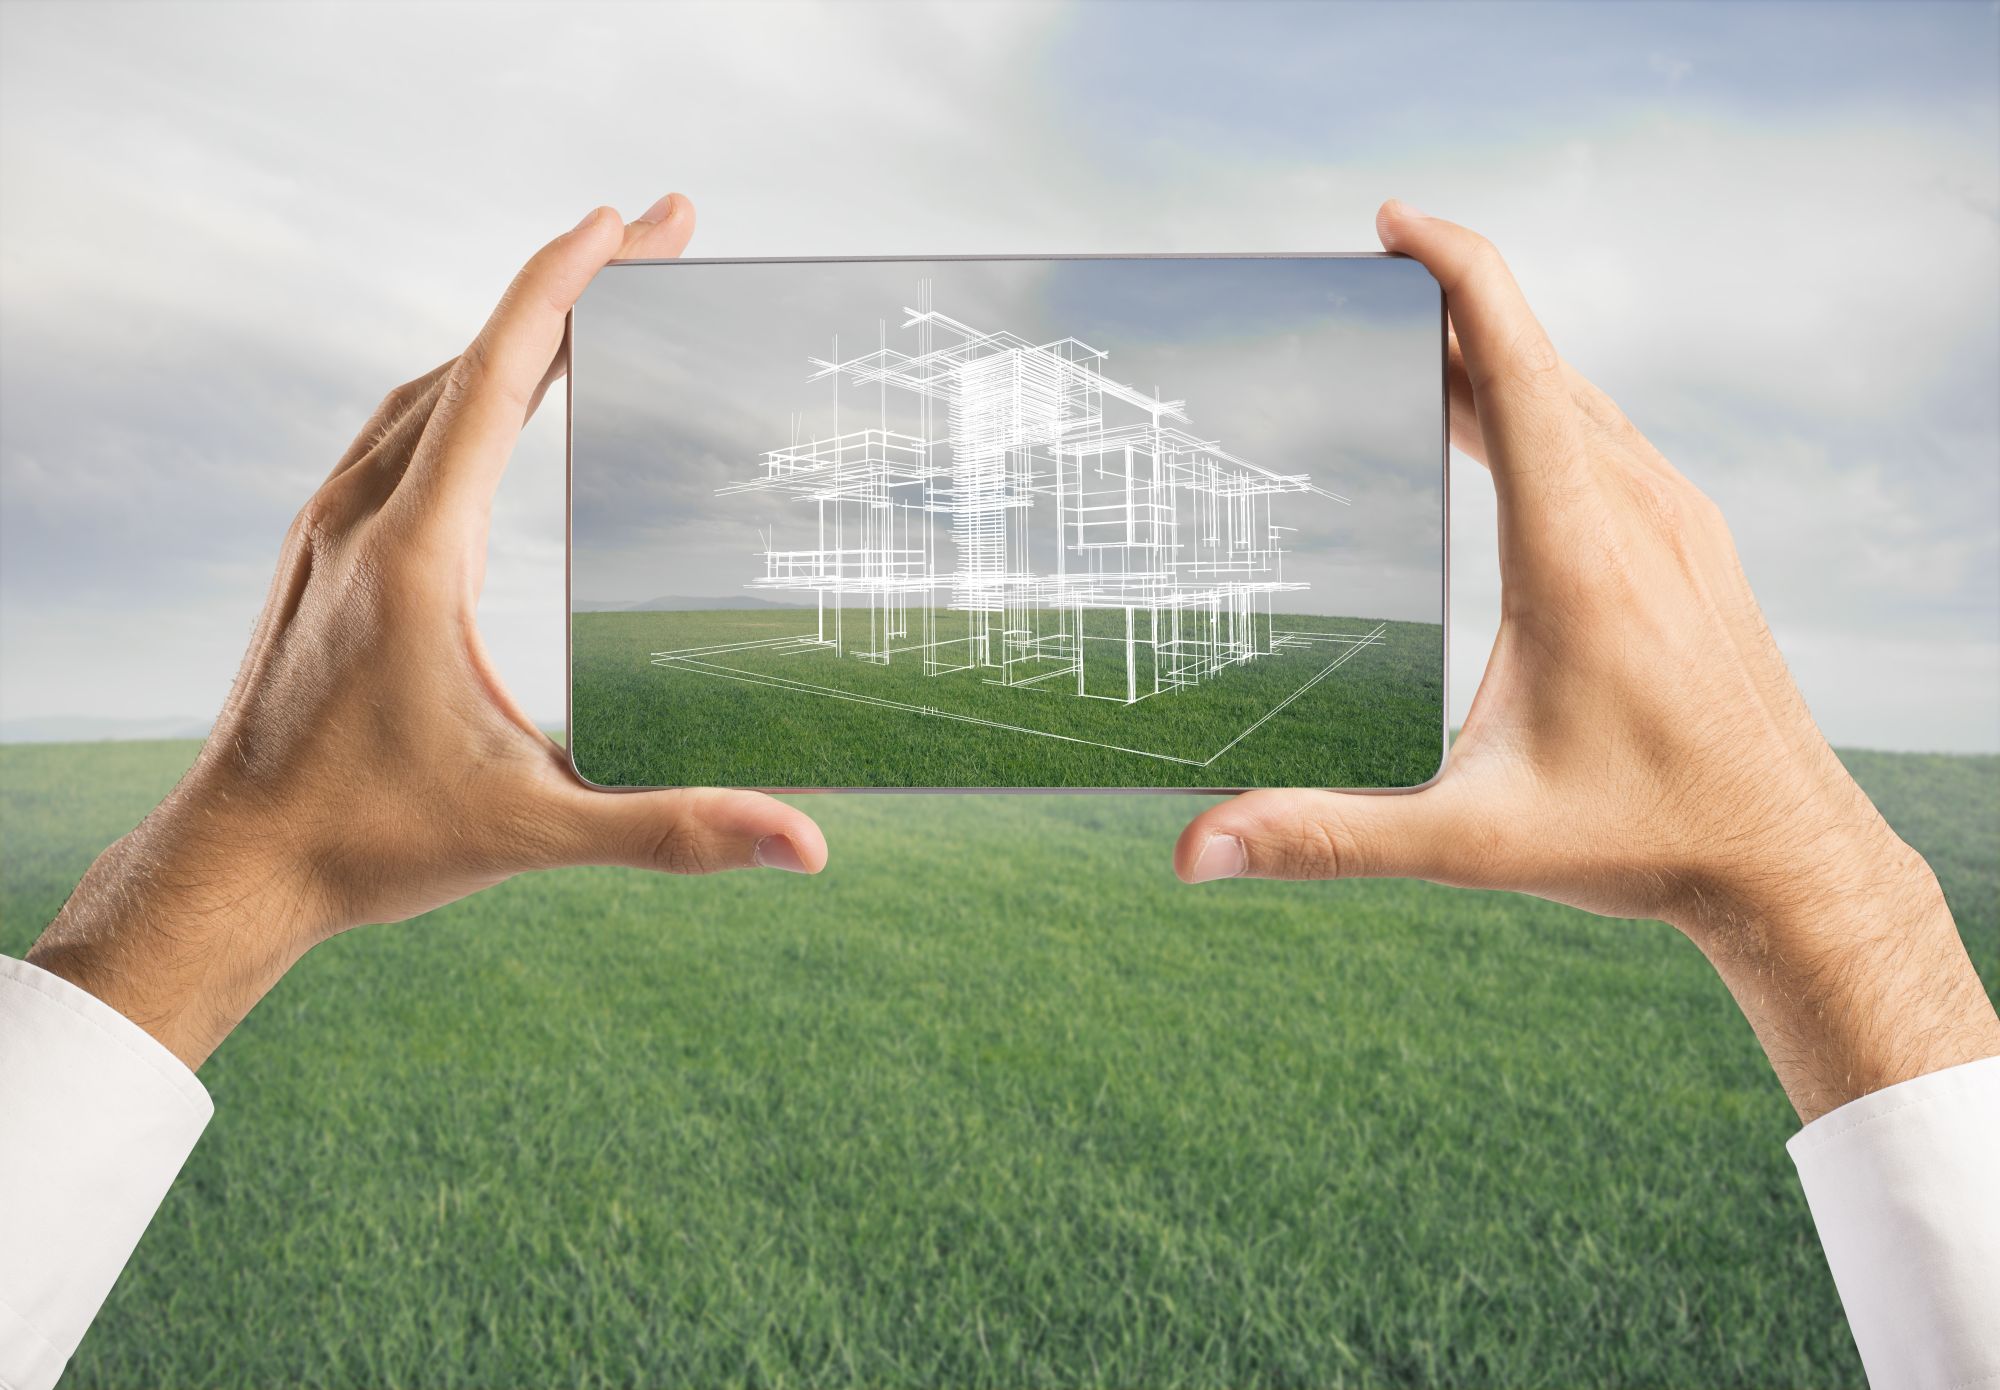 Рынок жилой недвижимости в 2020 году - прогнозы.  Фото  Shutterstock